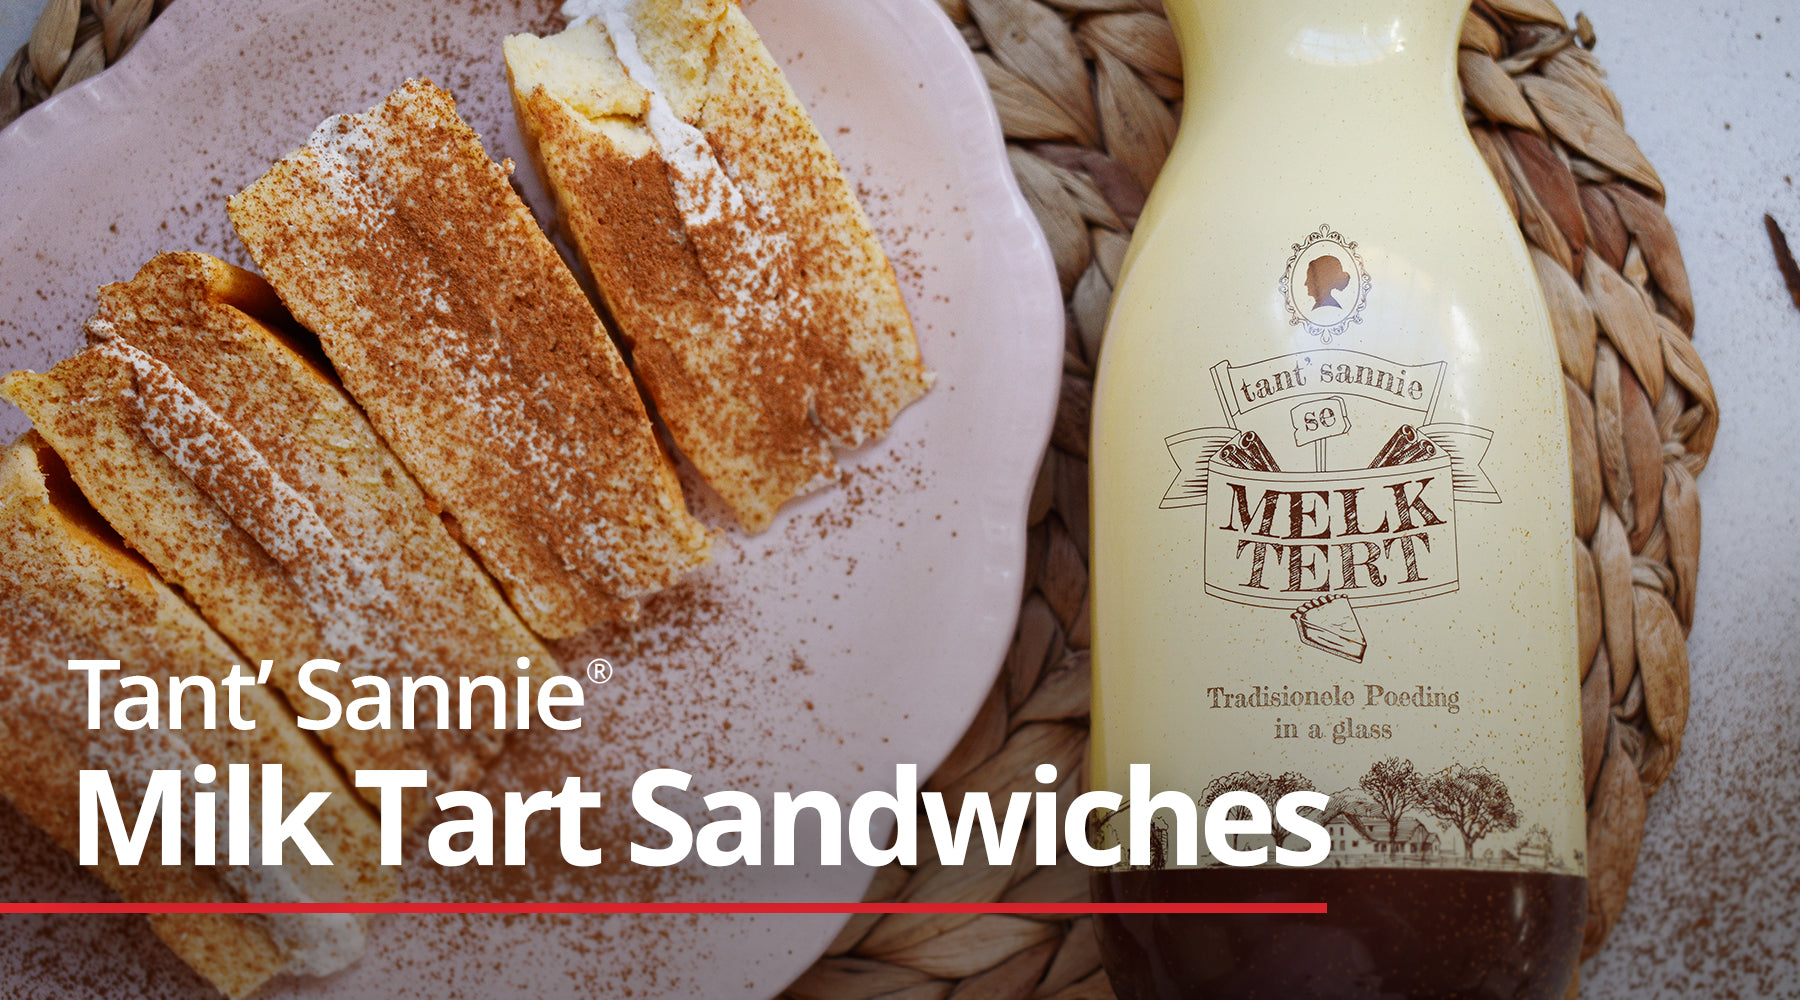 Tant’ Sannie Milk Tart Sandwiches